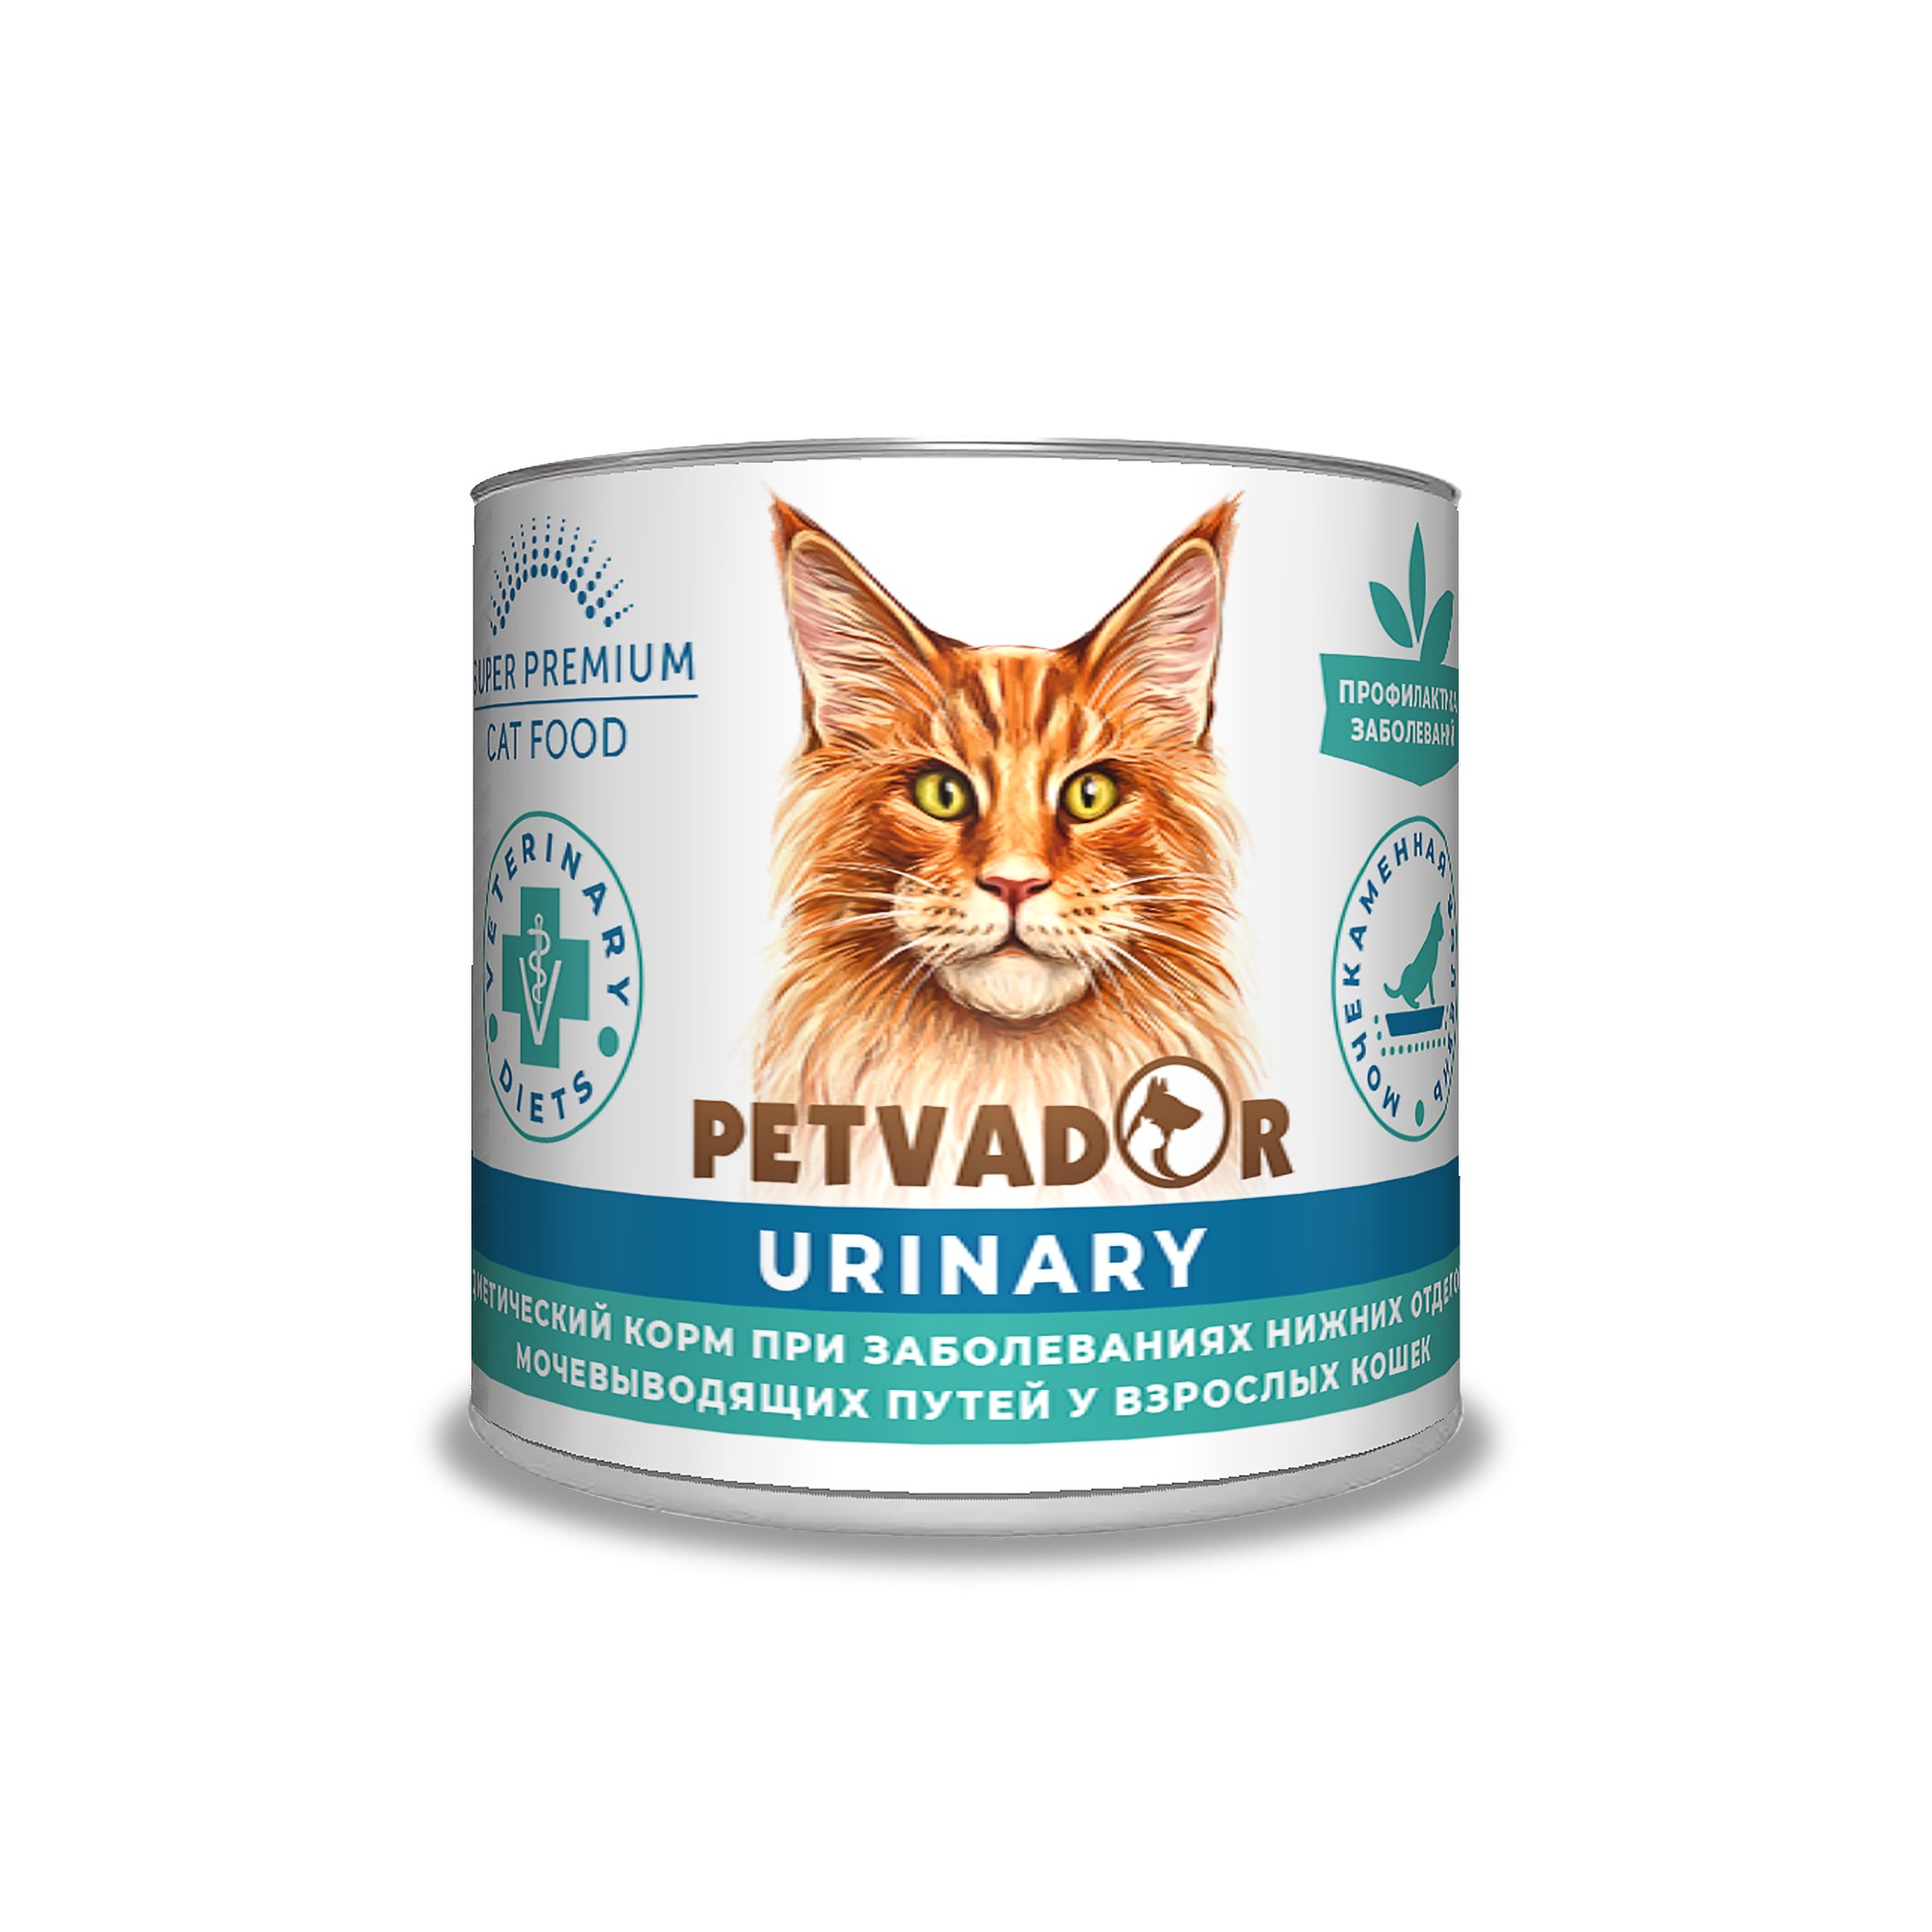 Petvador VET Urinary консервы для кошек 240 г 1